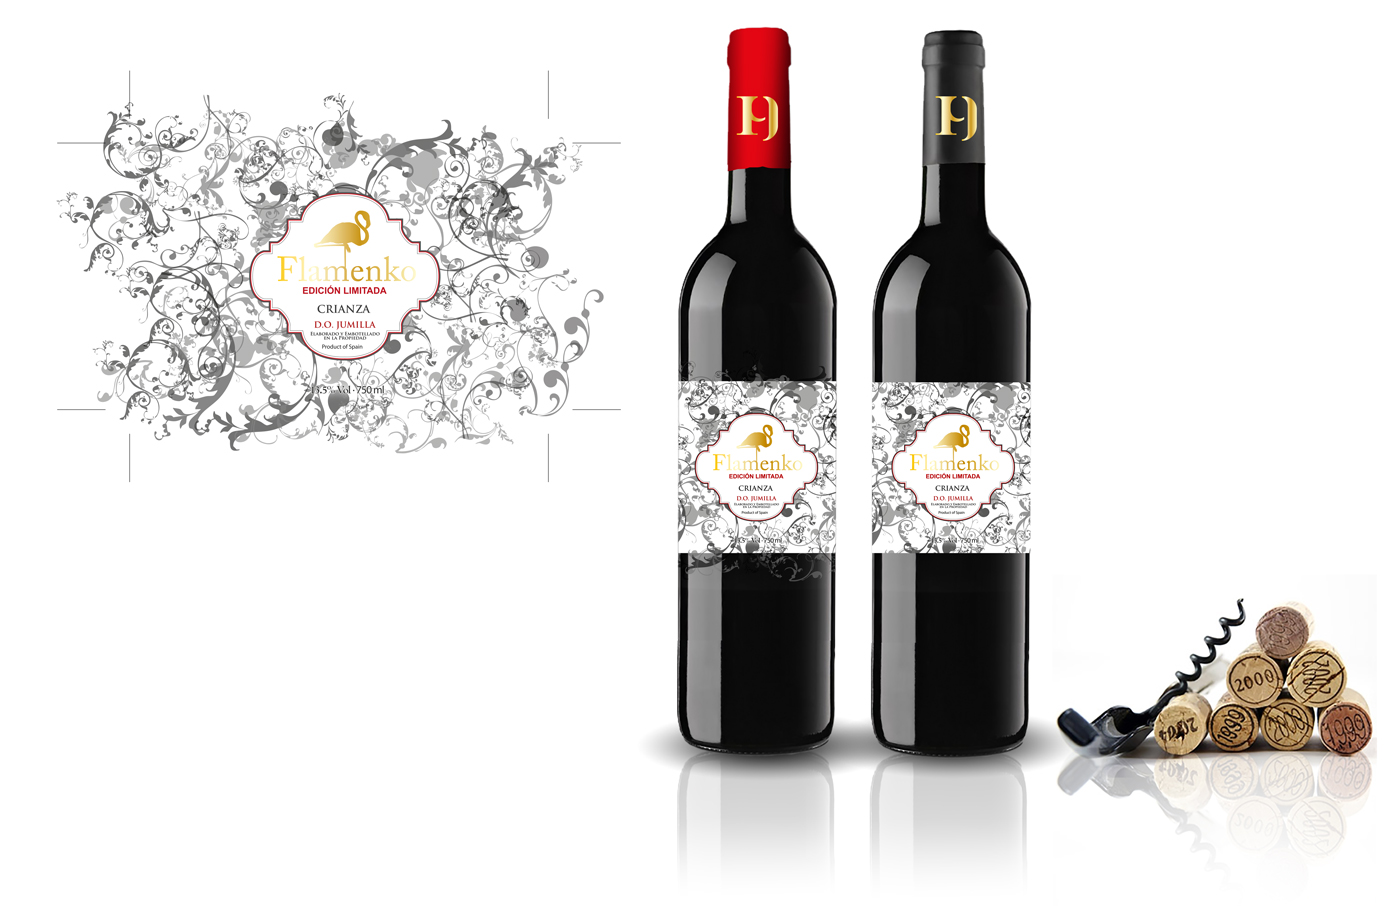 Diseño gráfico y creativo de etiquetas y packaging de vino para FLAMENKO para exportación al mercado Chino